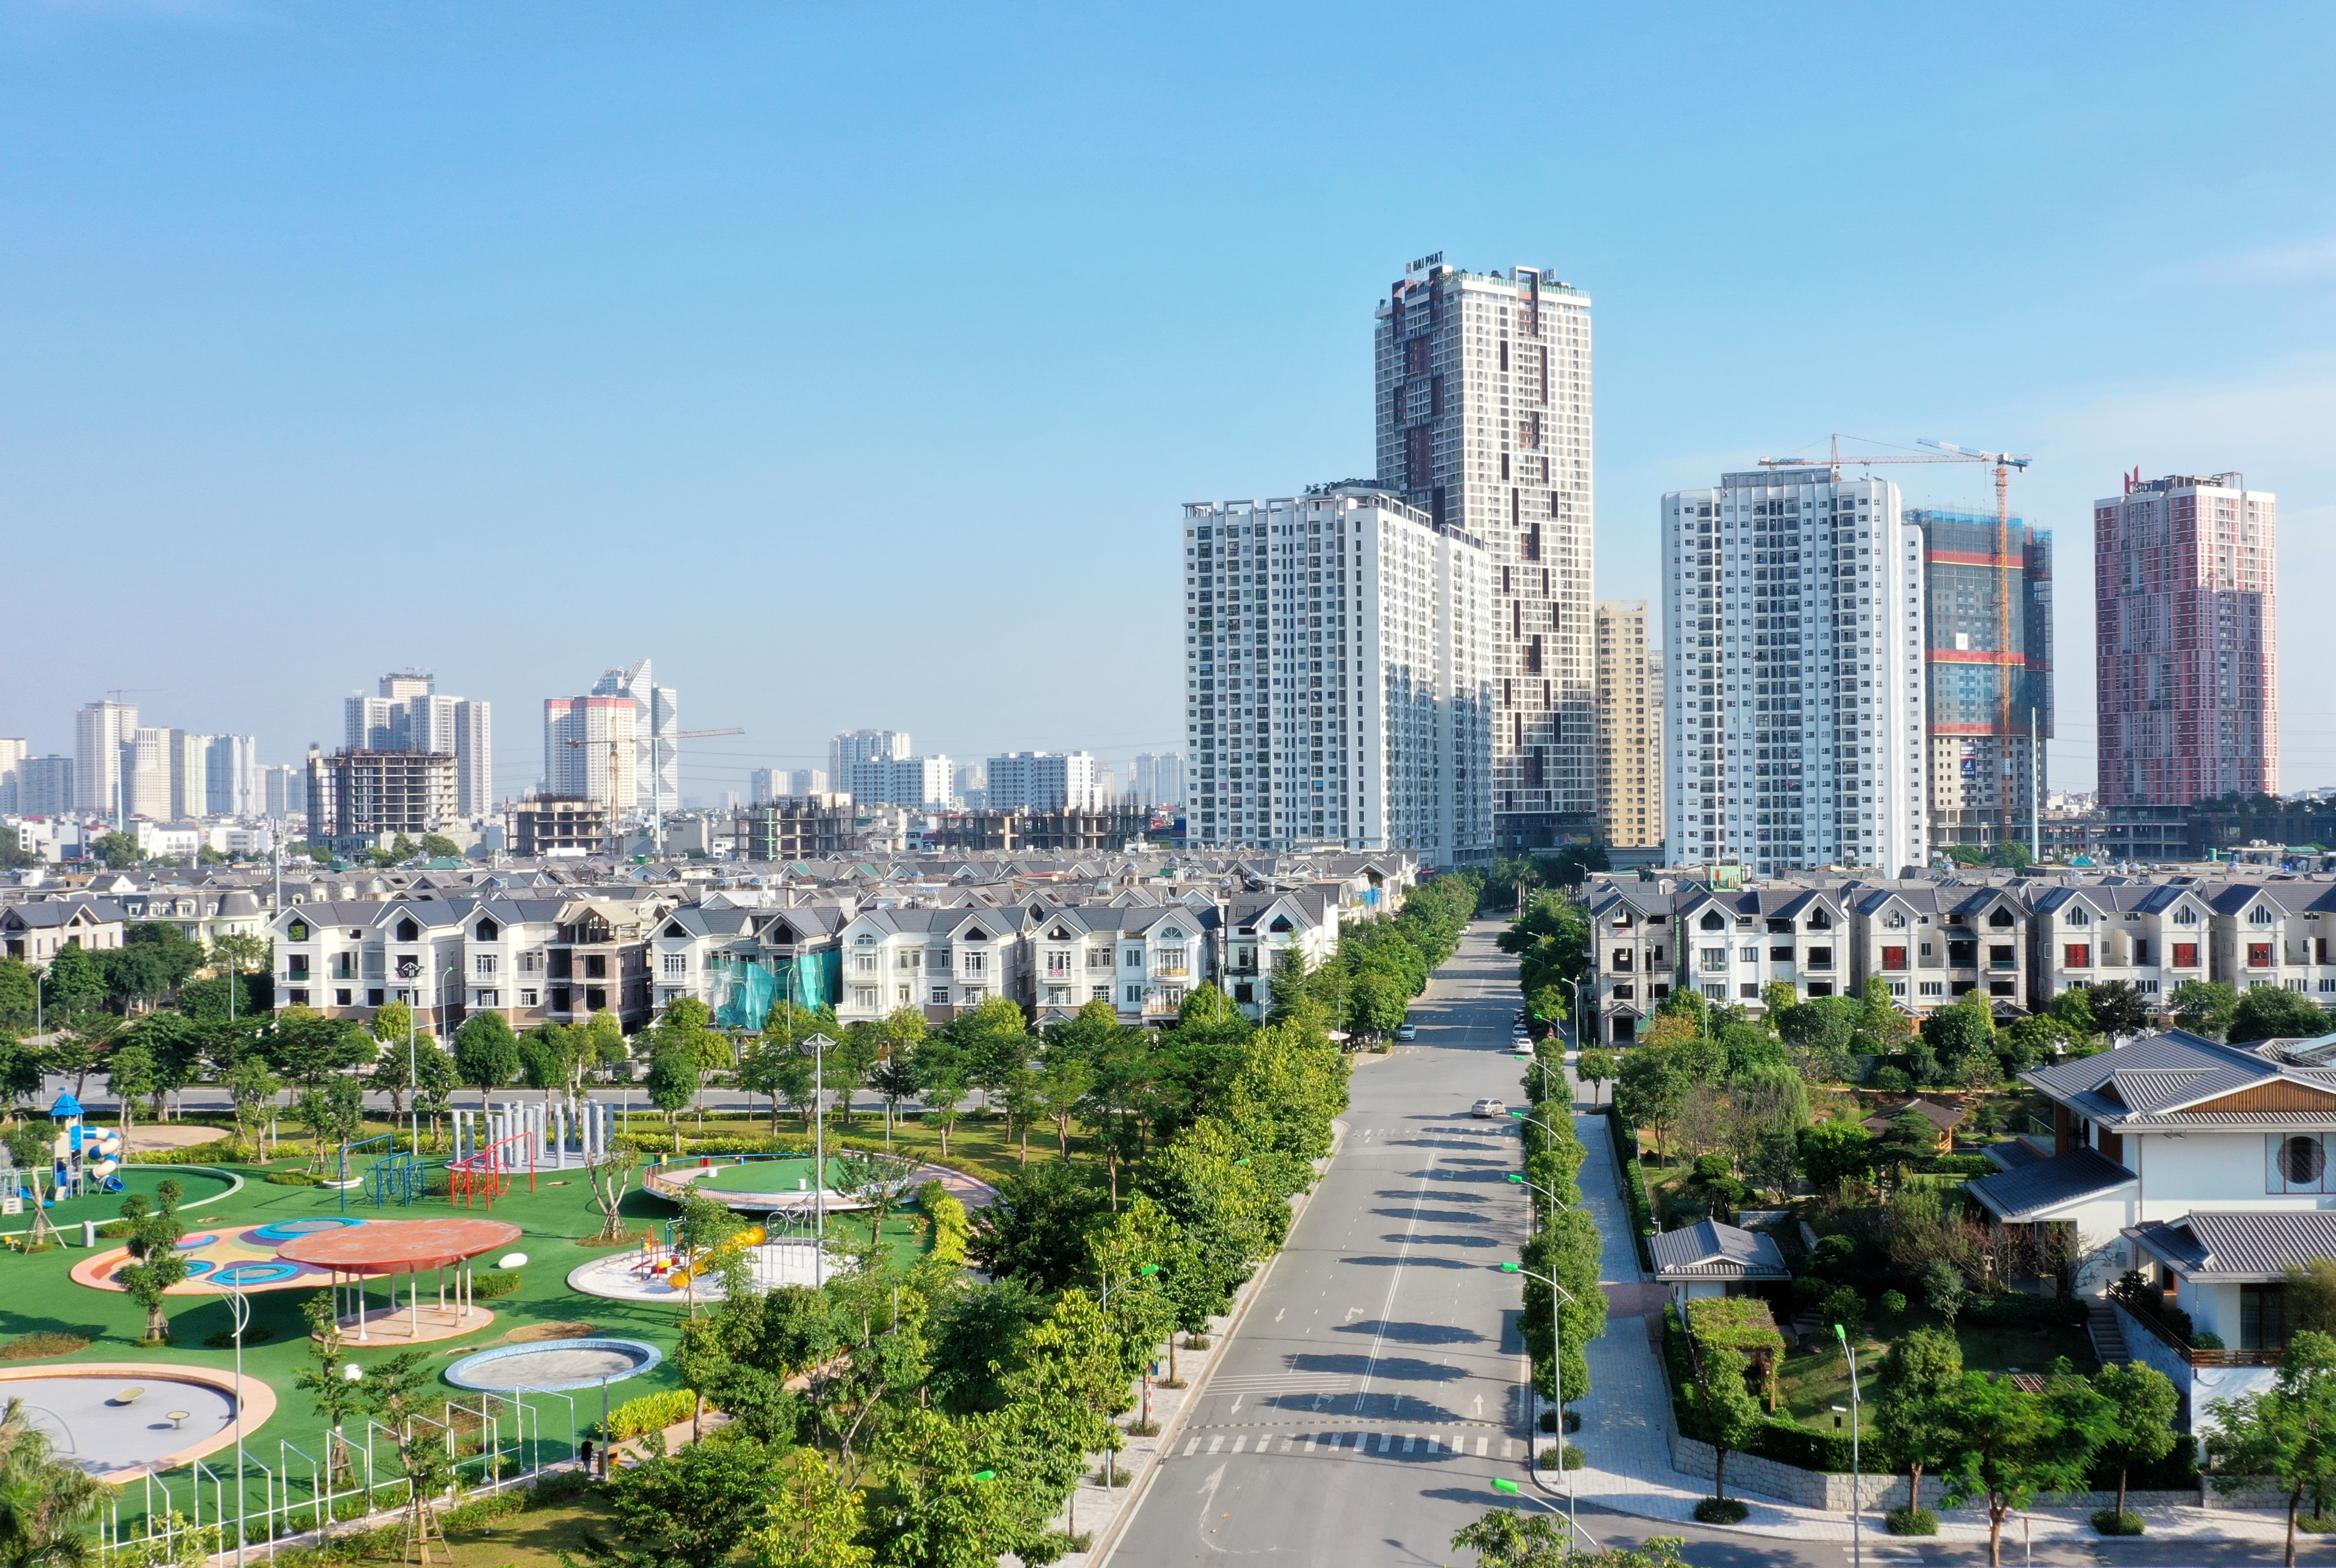 Khu đô thị Dương Nội – Miền đất xanh an lành